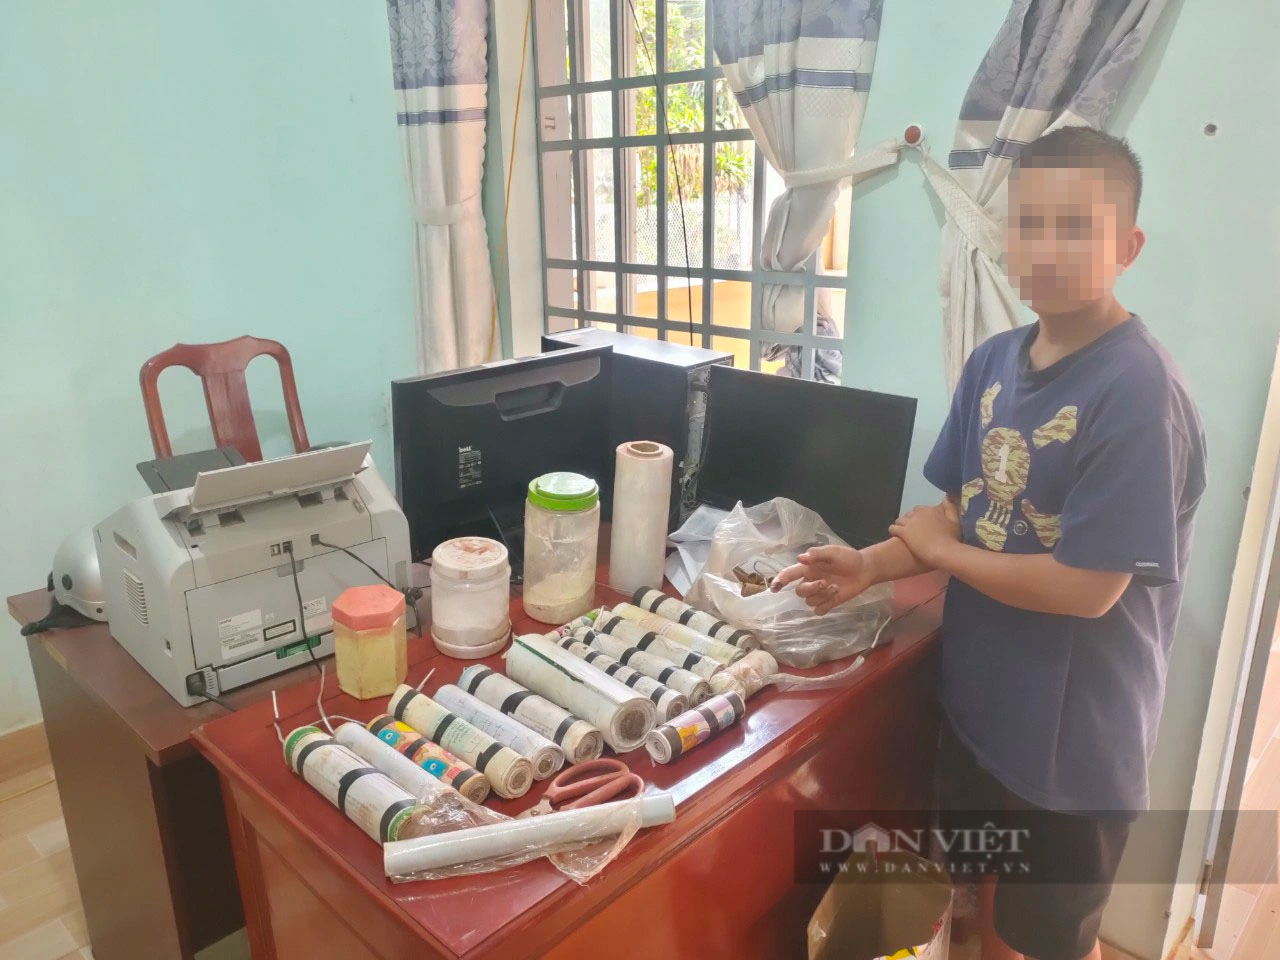 Bình Phước: Tự chế tạo pháo nổ dịp Tết Nguyên đán, cậu bé 14 tuổi bị phạt cảnh cáo- Ảnh 1.